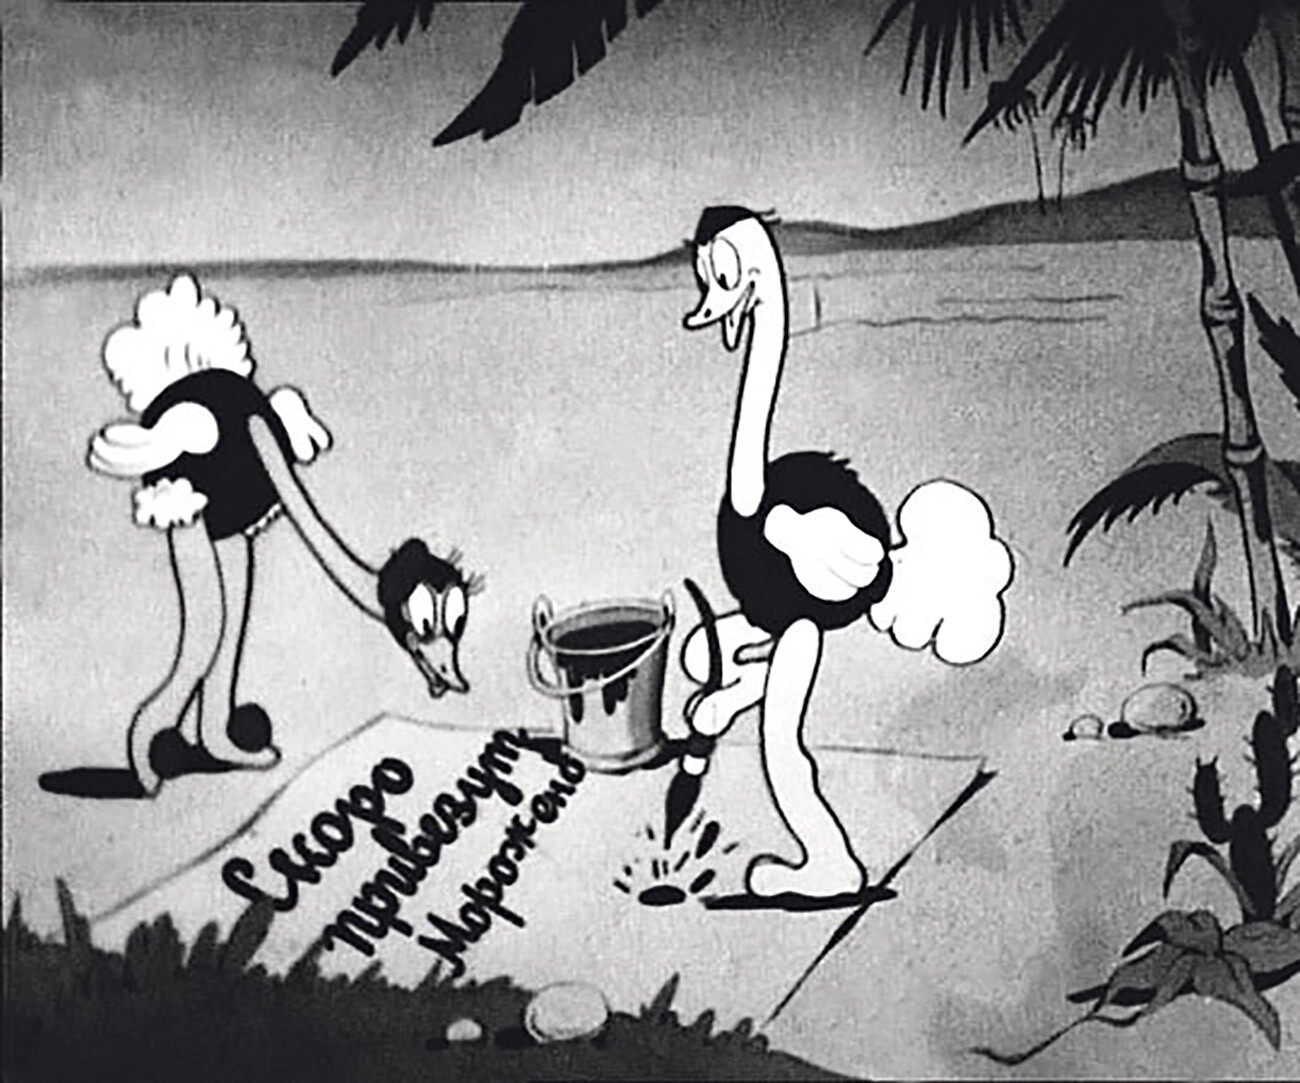 ソユーズムルトフィルムが最初に制作したアニメ「アフリカが暑い」